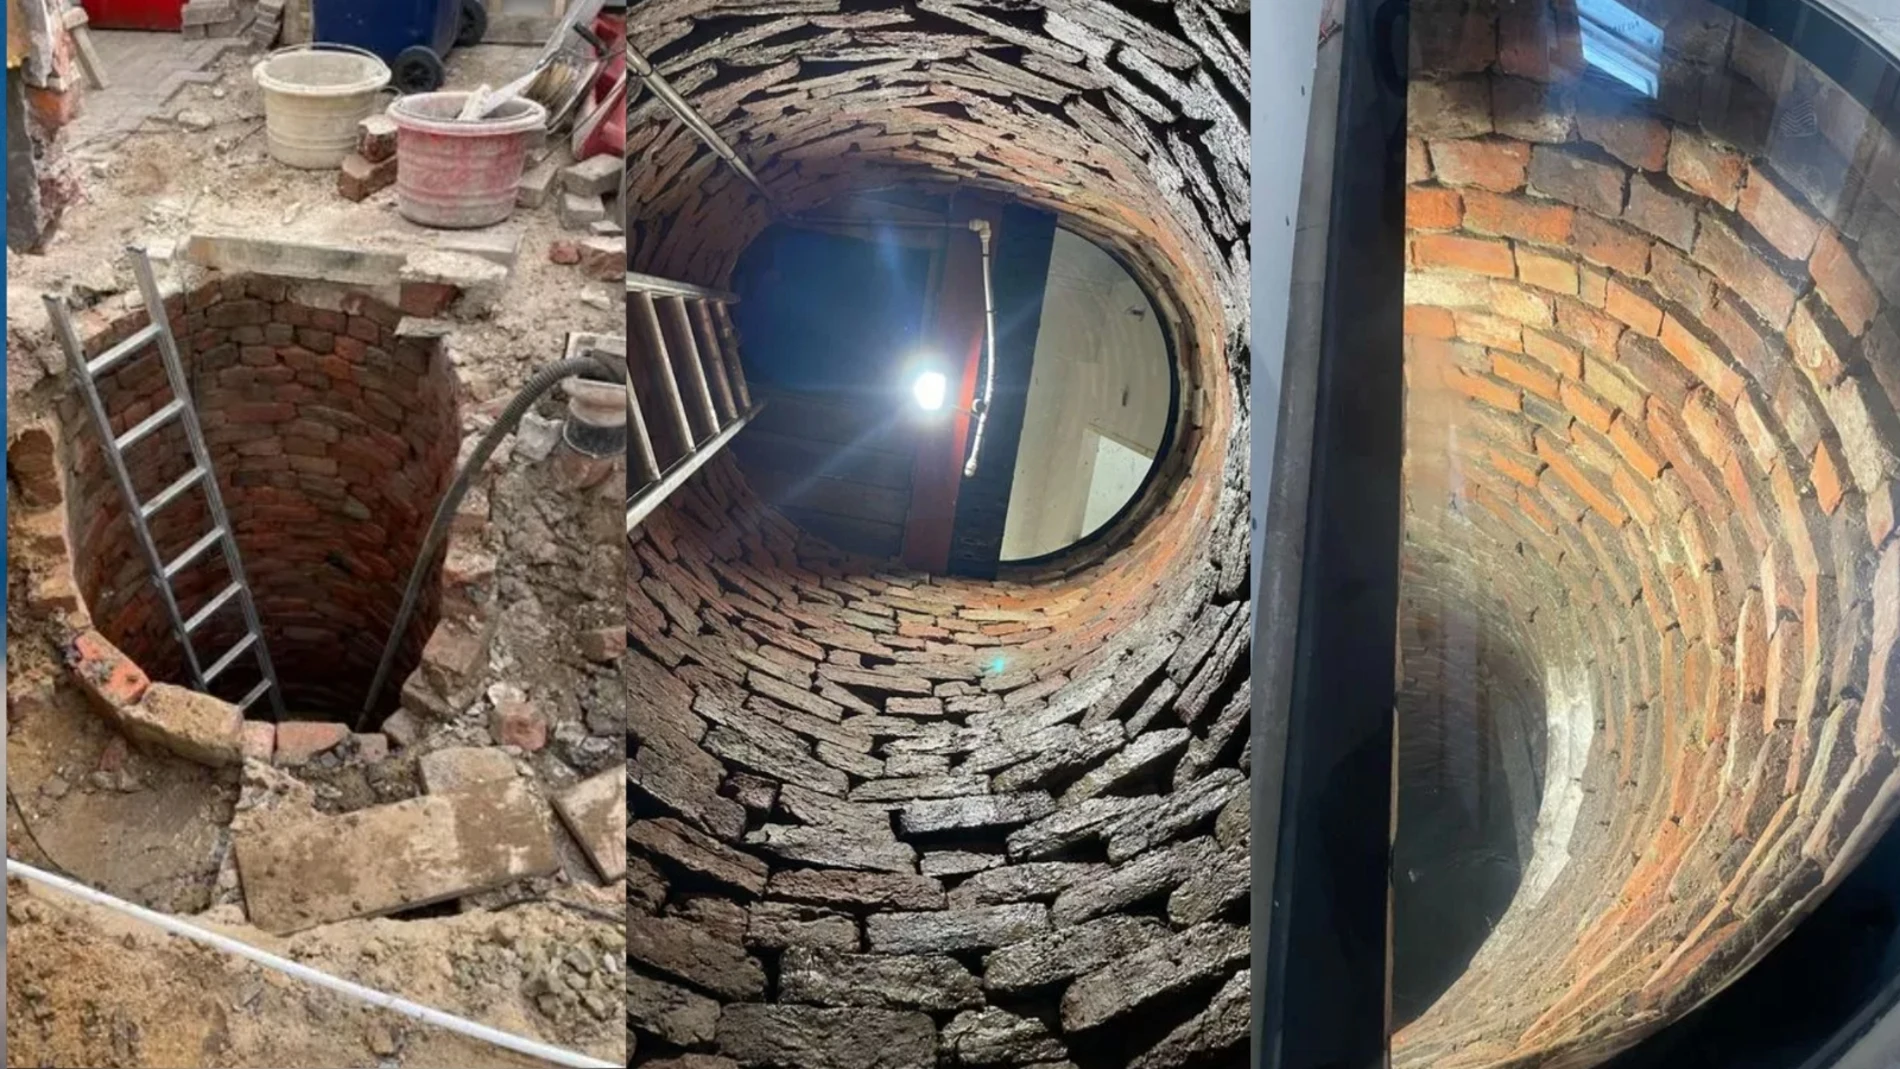 Descubren un pozo secreto de más de 200 años bajo su casa durante una reforma